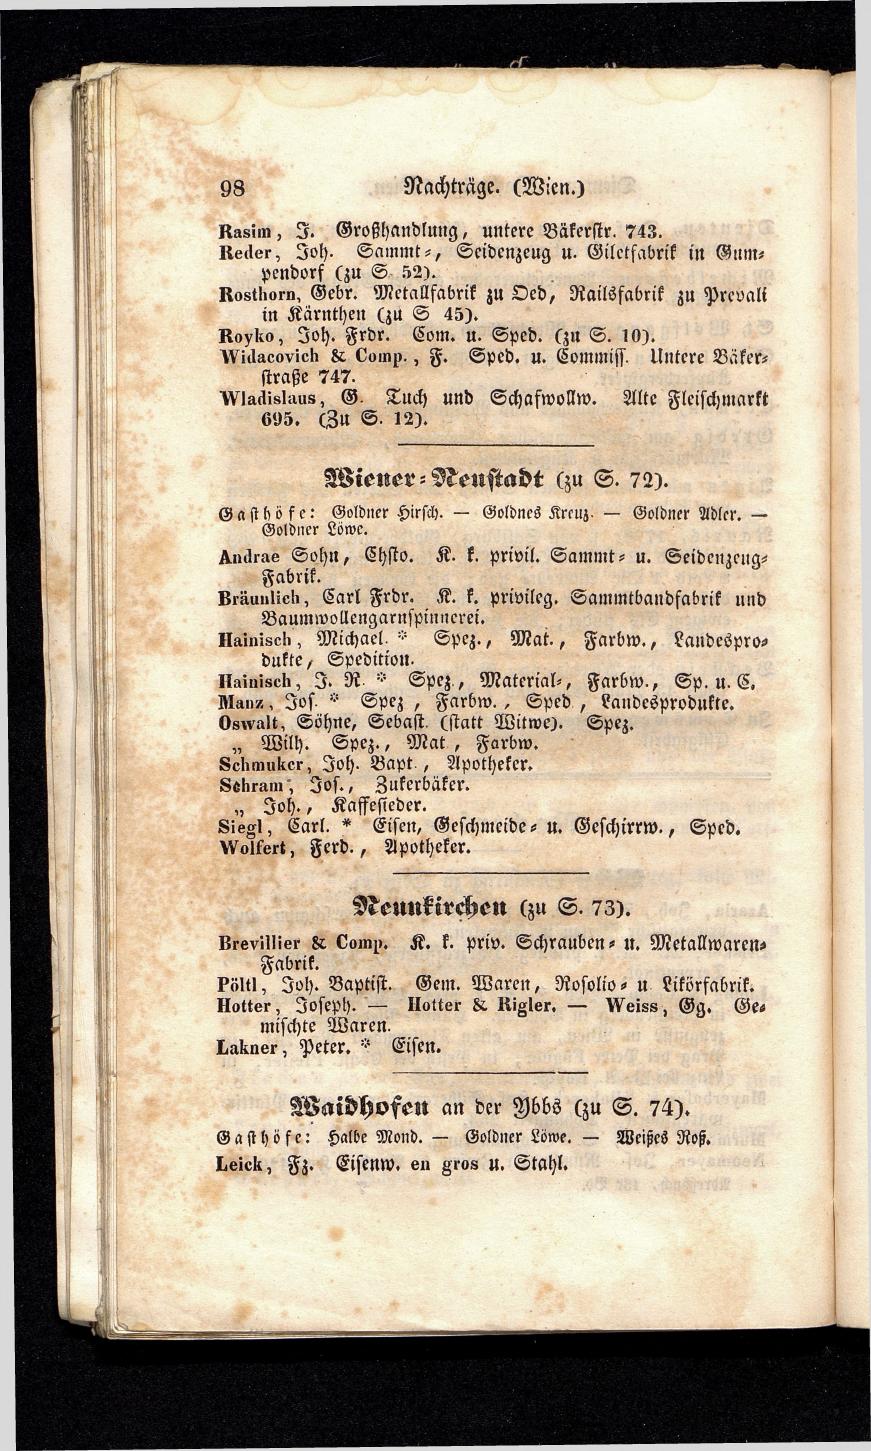 Grosses Adressbuch der Kaufleute. No. 13. Oesterreich ober u. unter der Enns 1844 - Seite 102